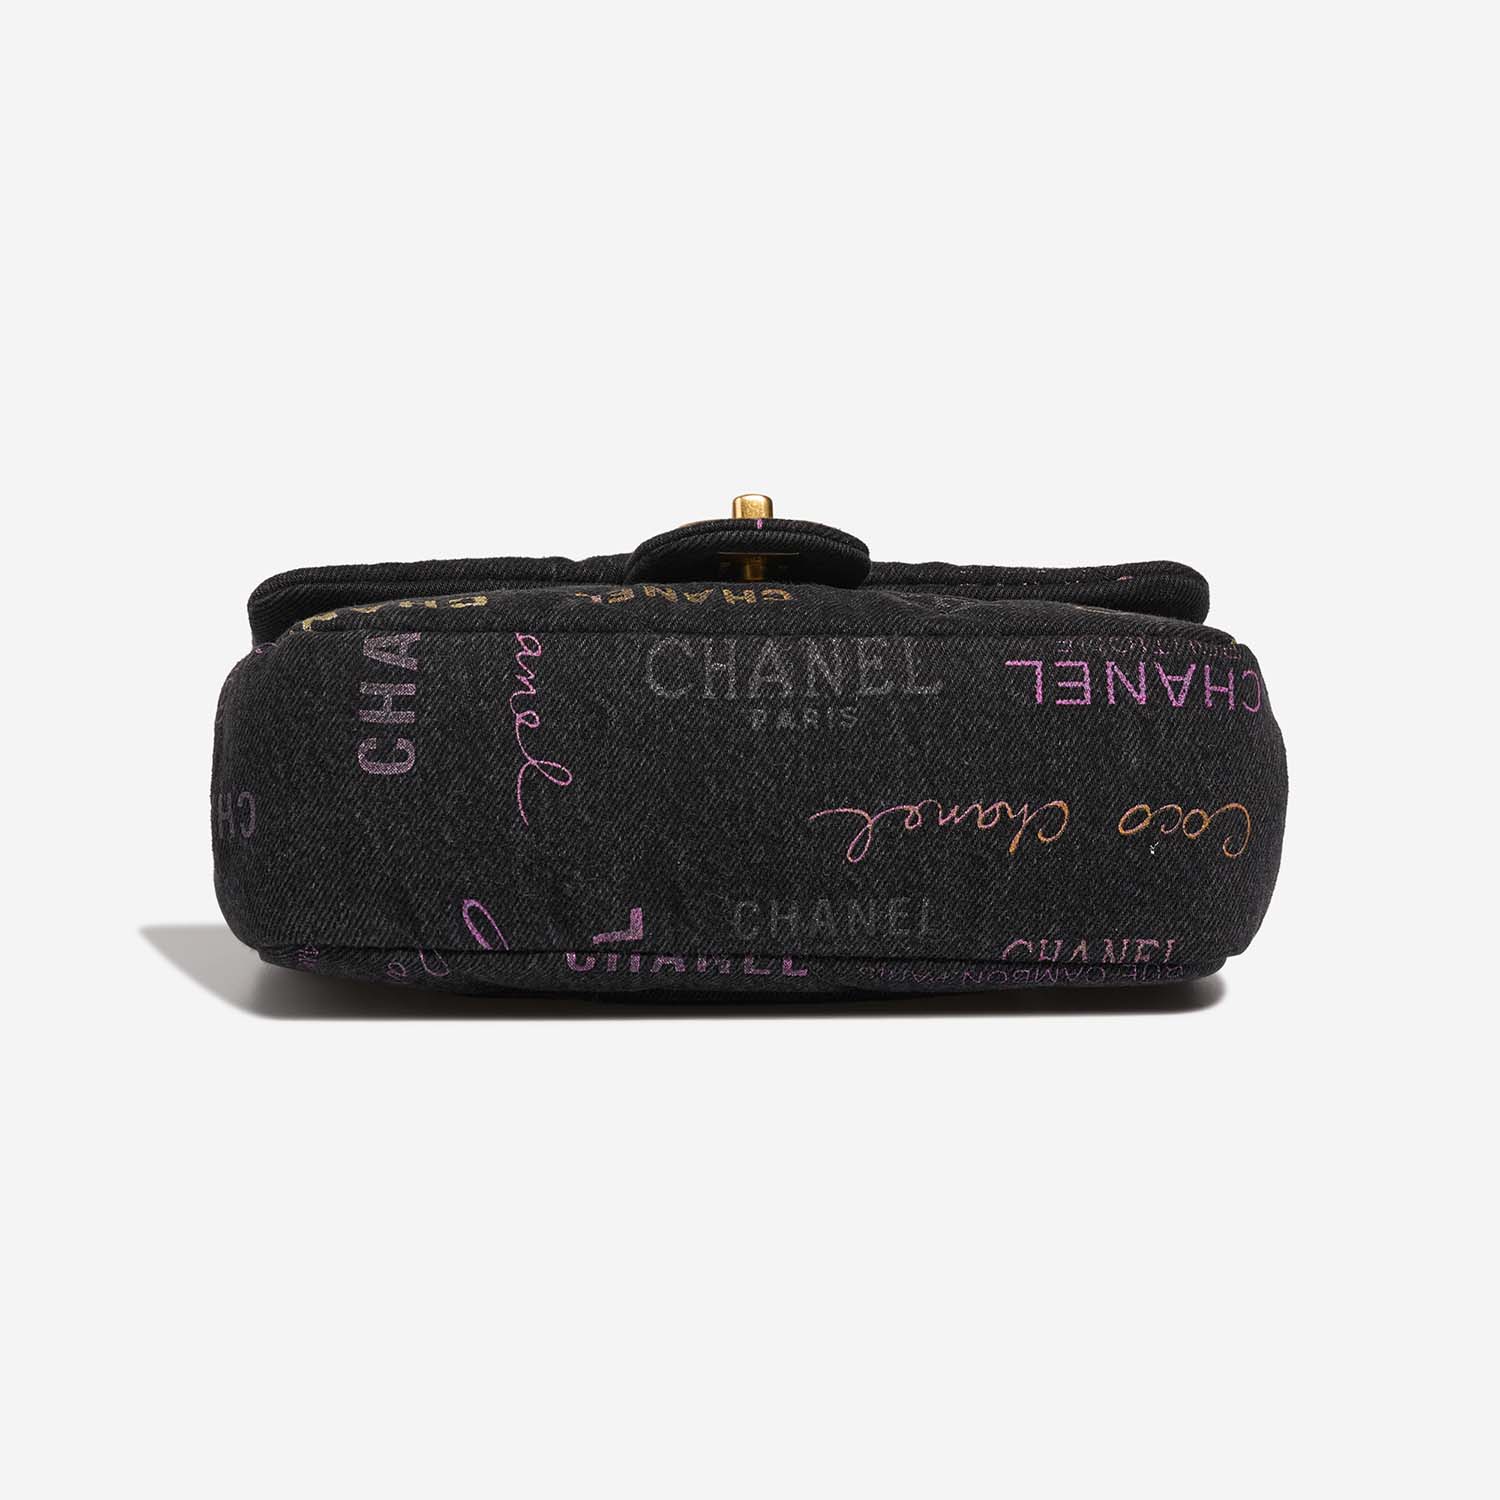 Chanel Timeless Small Multicolor Bottom | Verkaufen Sie Ihre Designer-Tasche auf Saclab.com